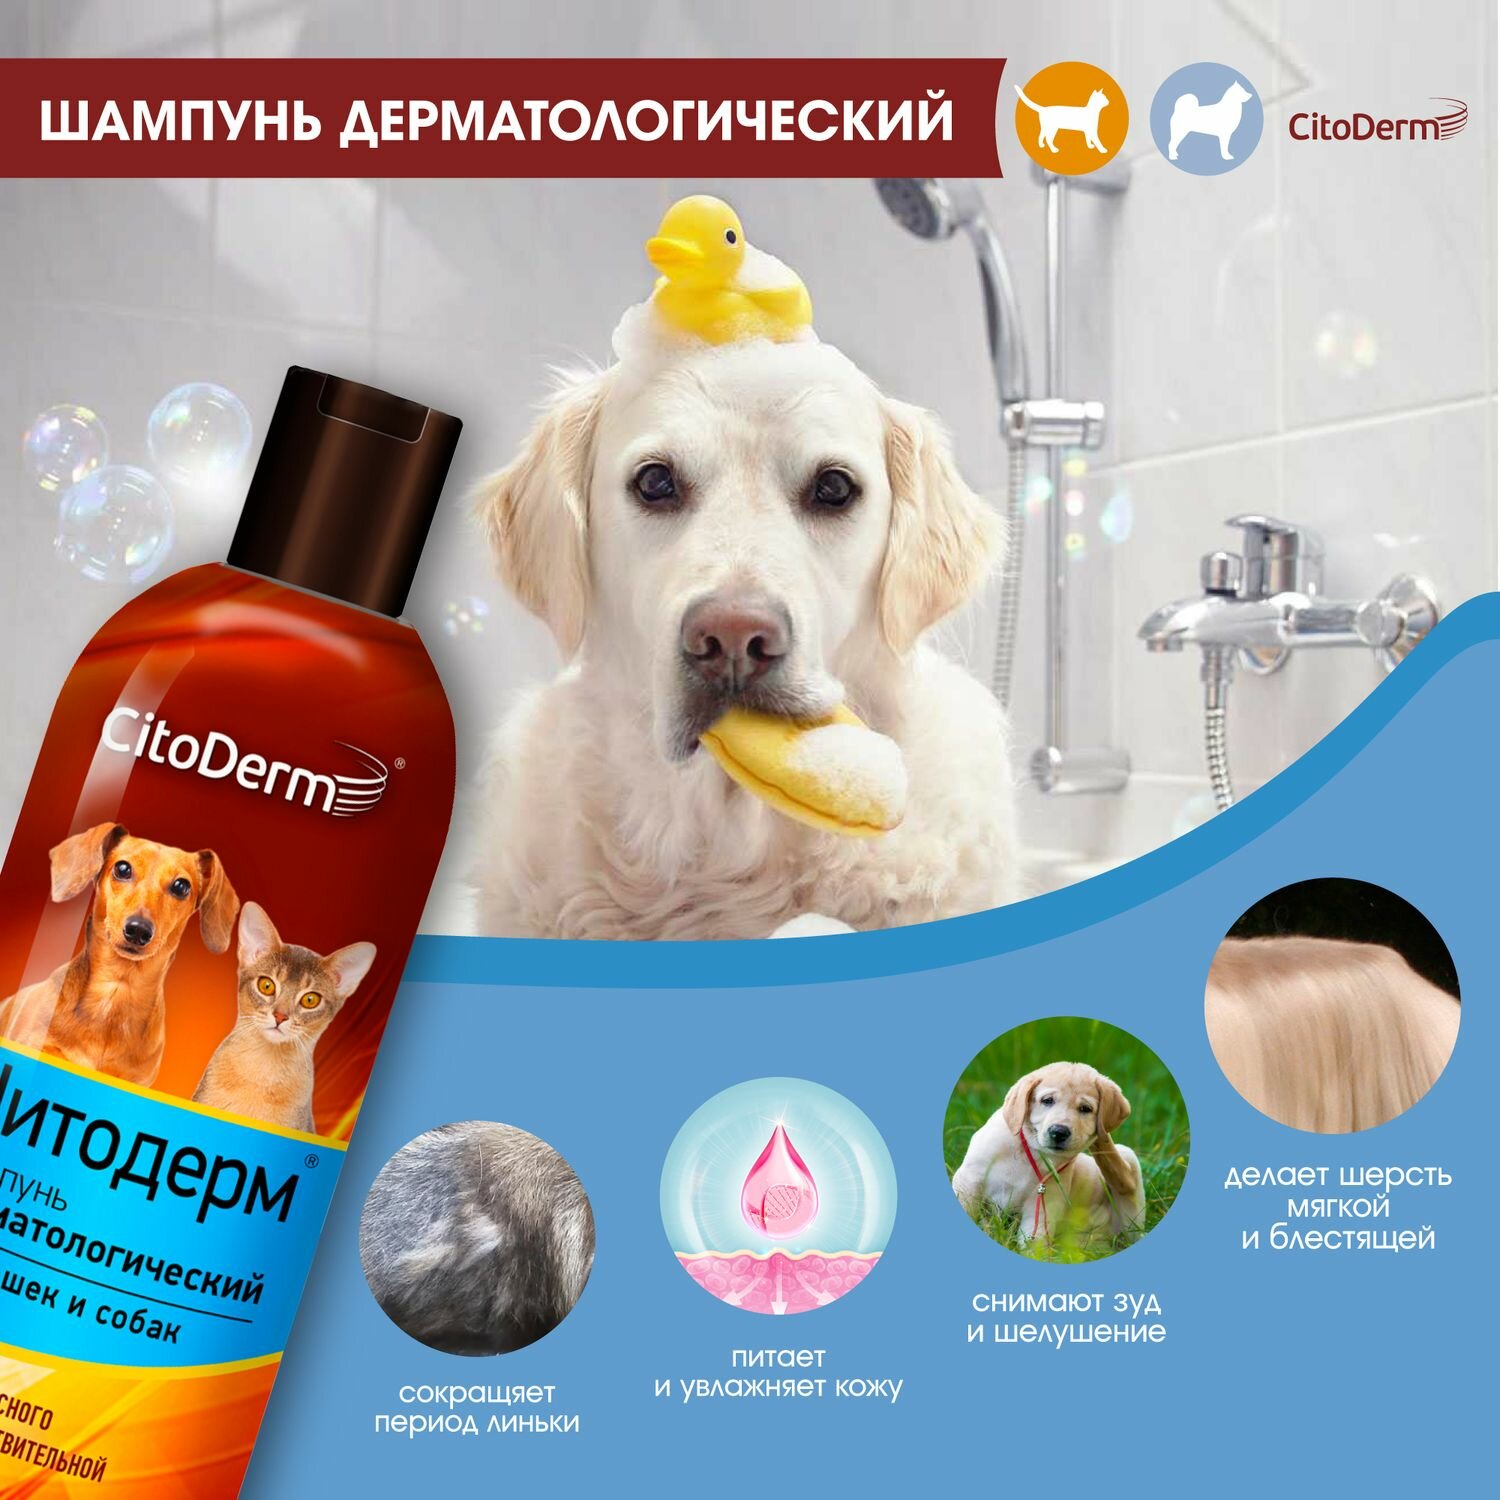 Шампунь CitoDerm для кошек Дерматологический для чувствительной кожи, 200мл - фото №8